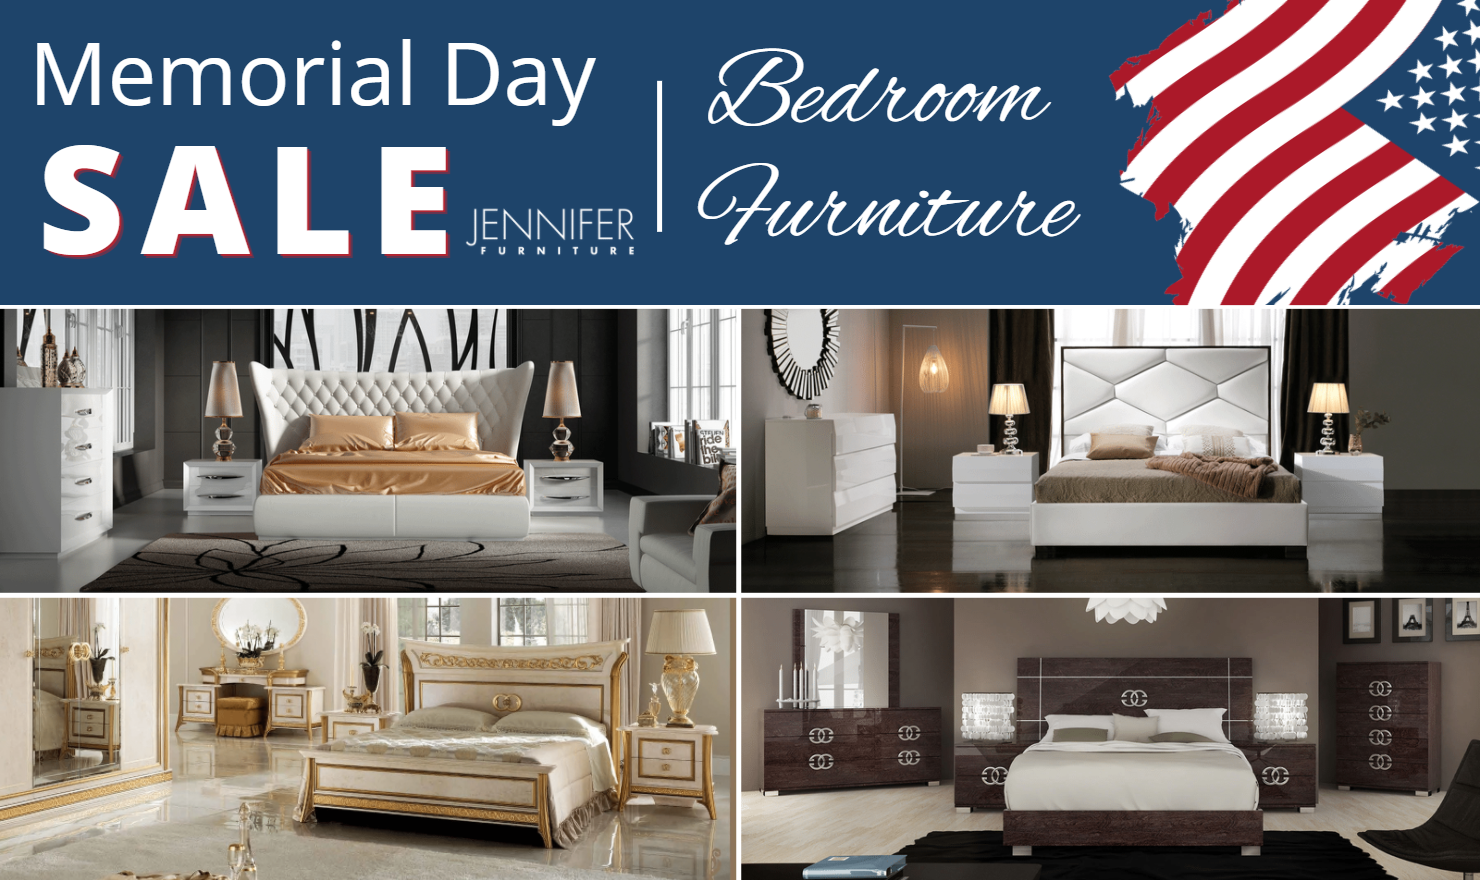 Memorial day Sale for Bedroom Furniture 2022 Jennifer Furniture